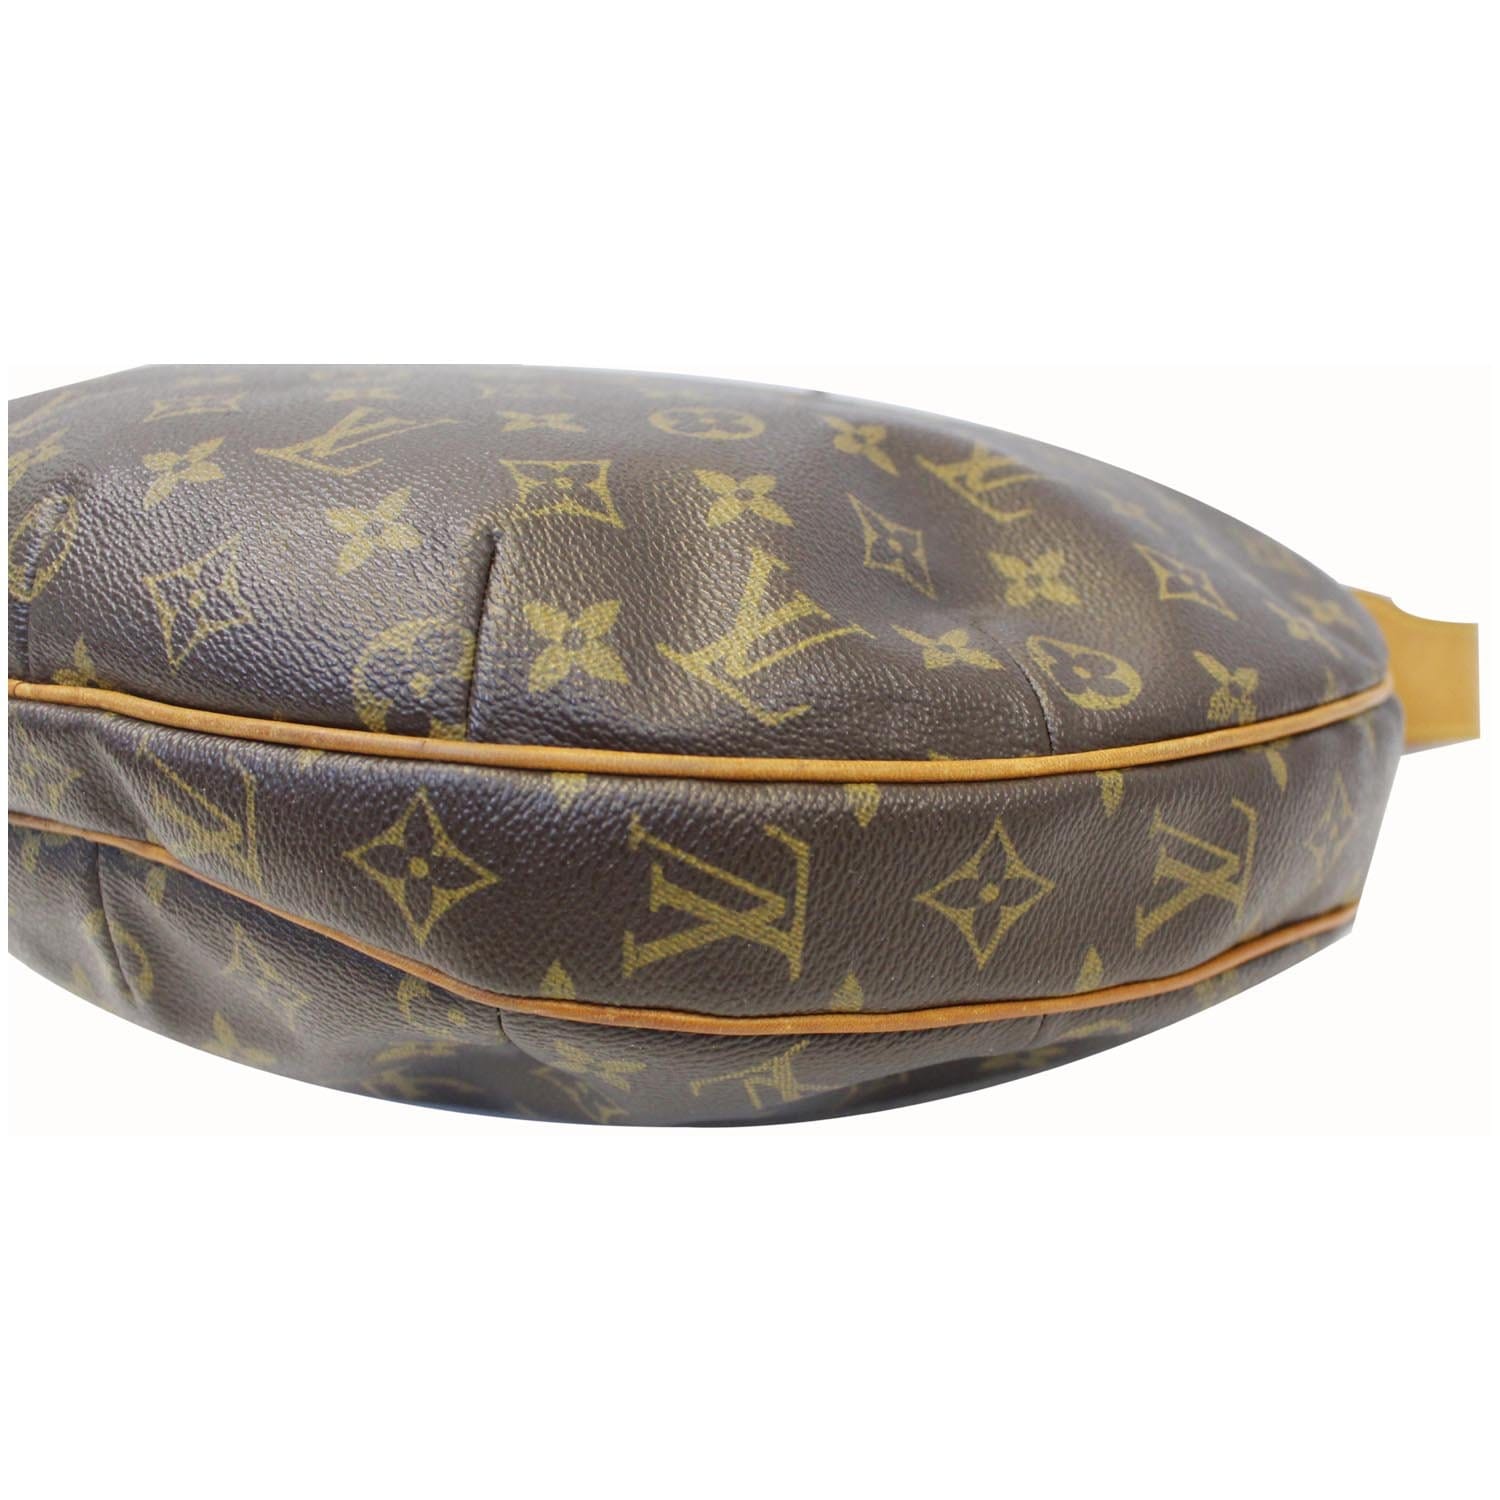 Louis Vuitton Croissant GM Monogram Shoulder Bag - '10s